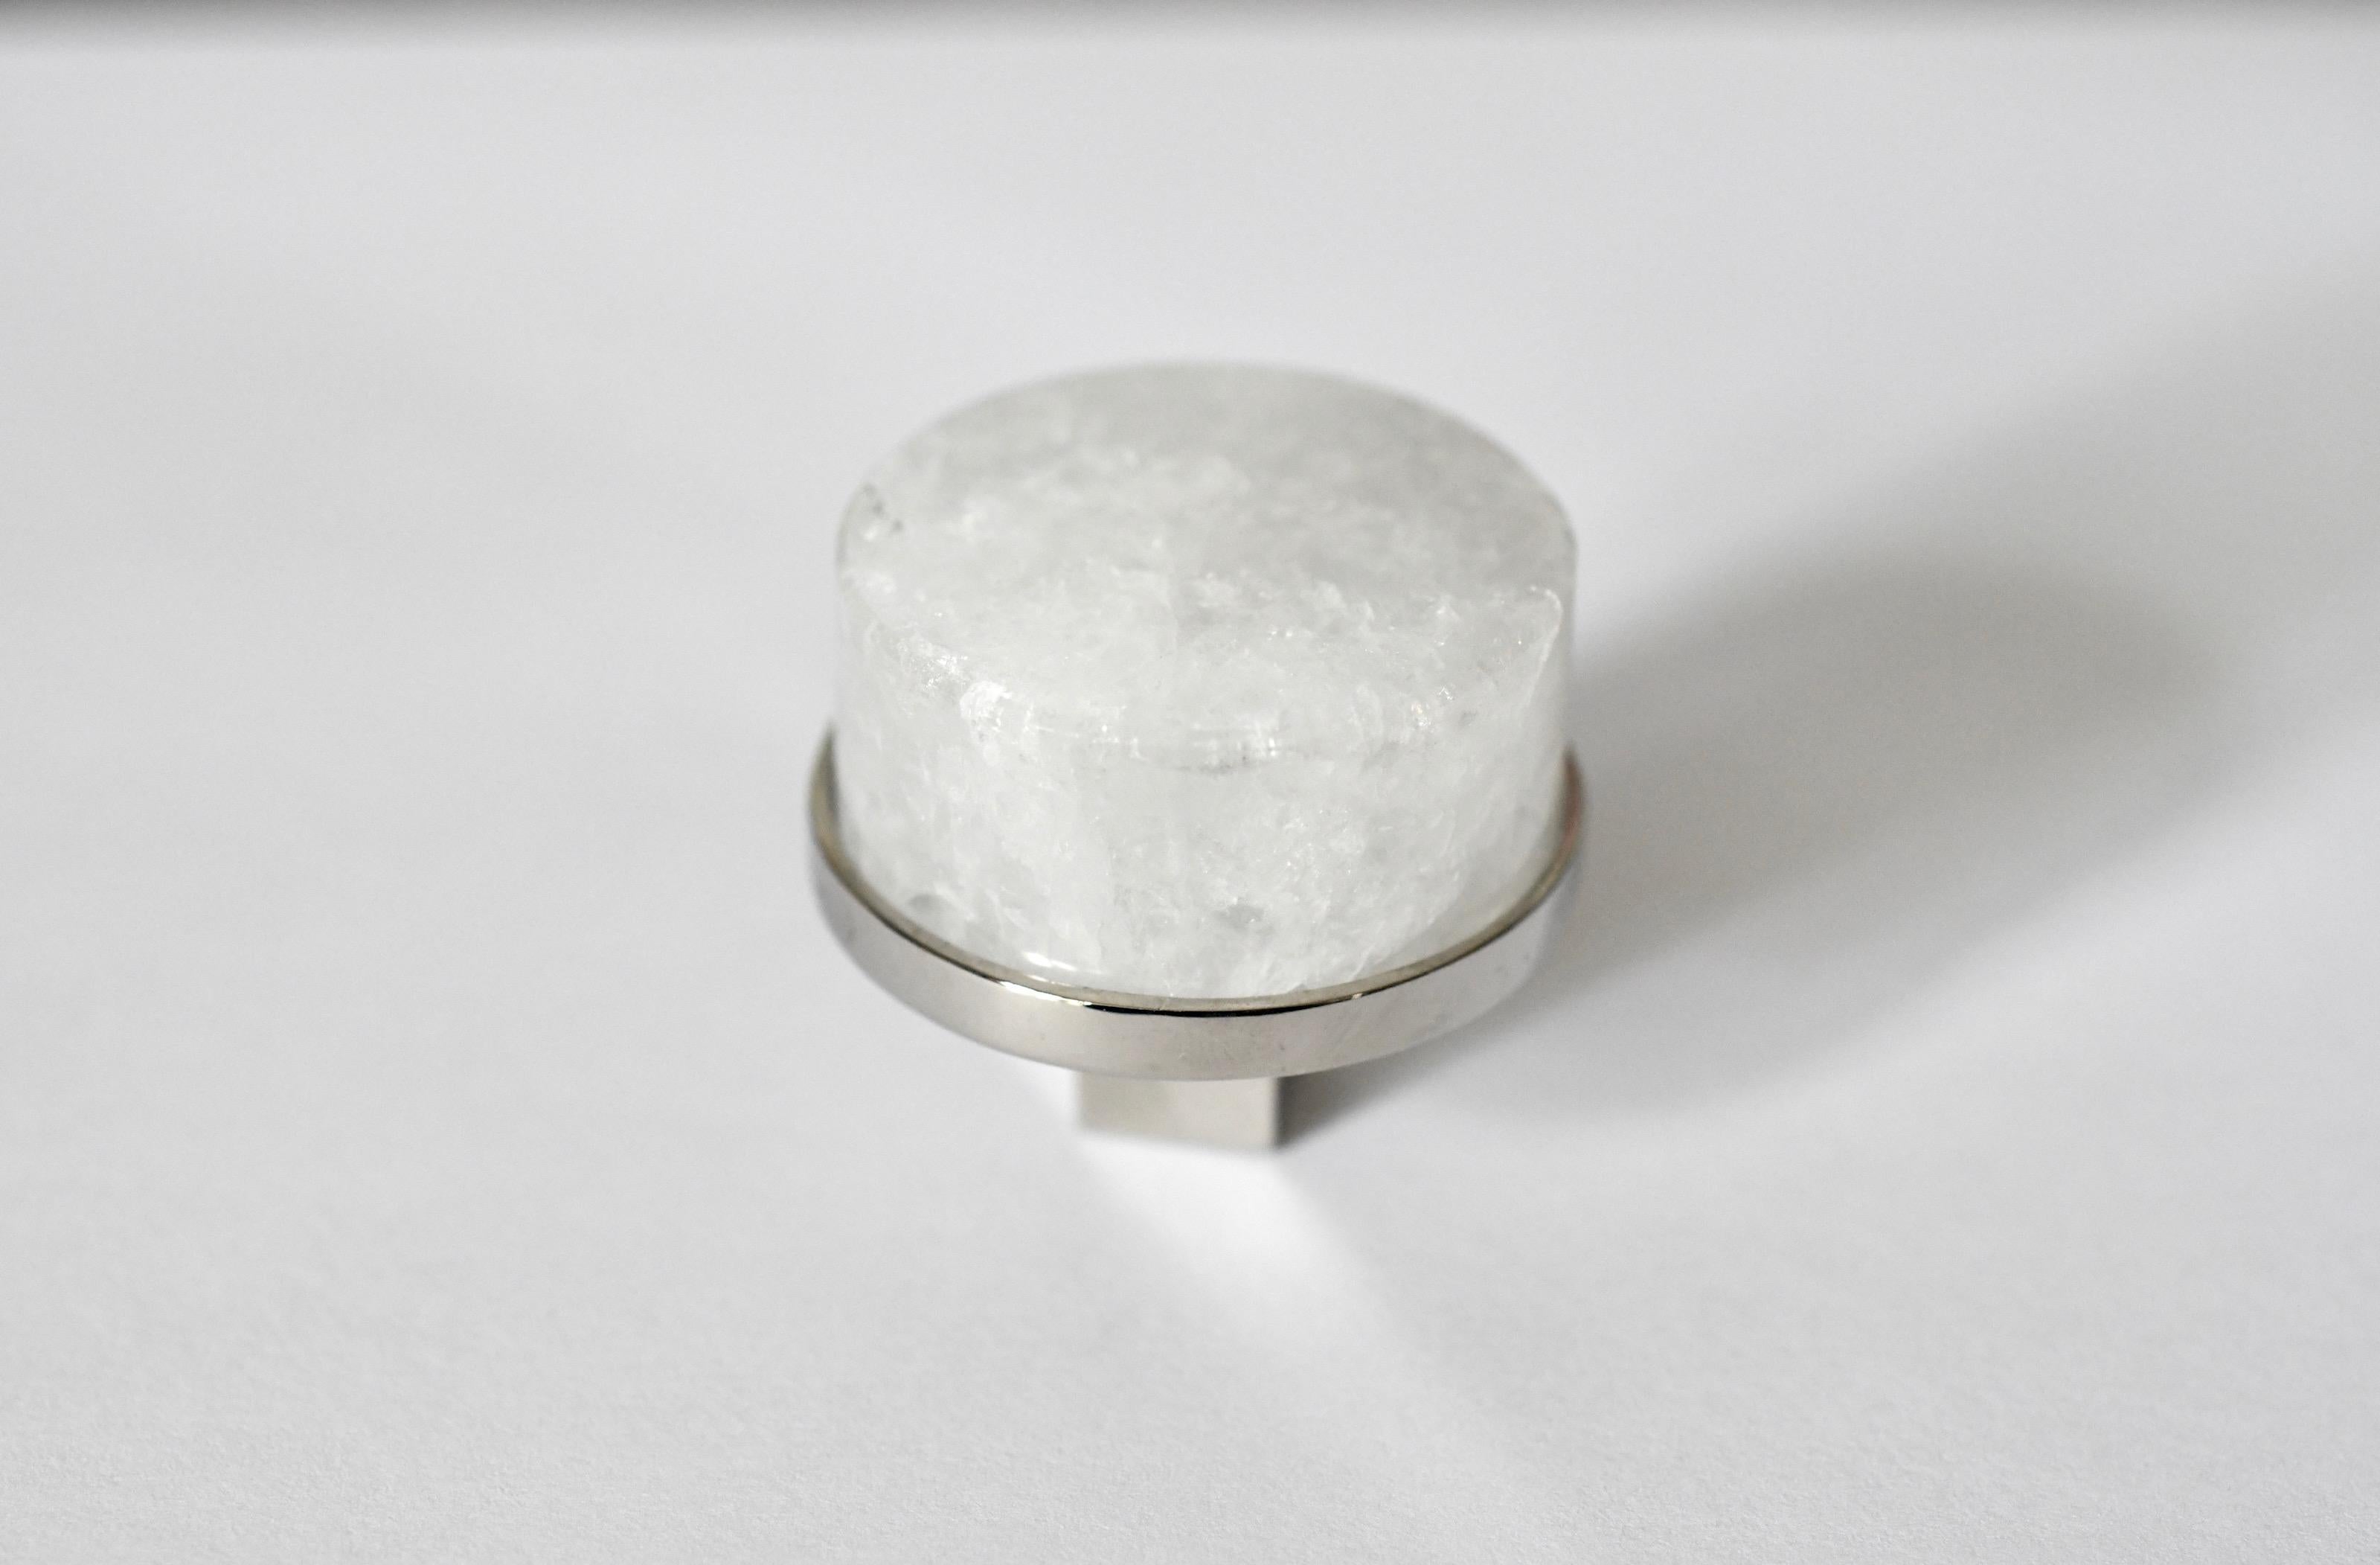 Bouton de forme circulaire en quartz de cristal de roche avec base en nickel. Créé par Phoenix Gallery, NYC.
Taille et finition personnalisées sur demande.